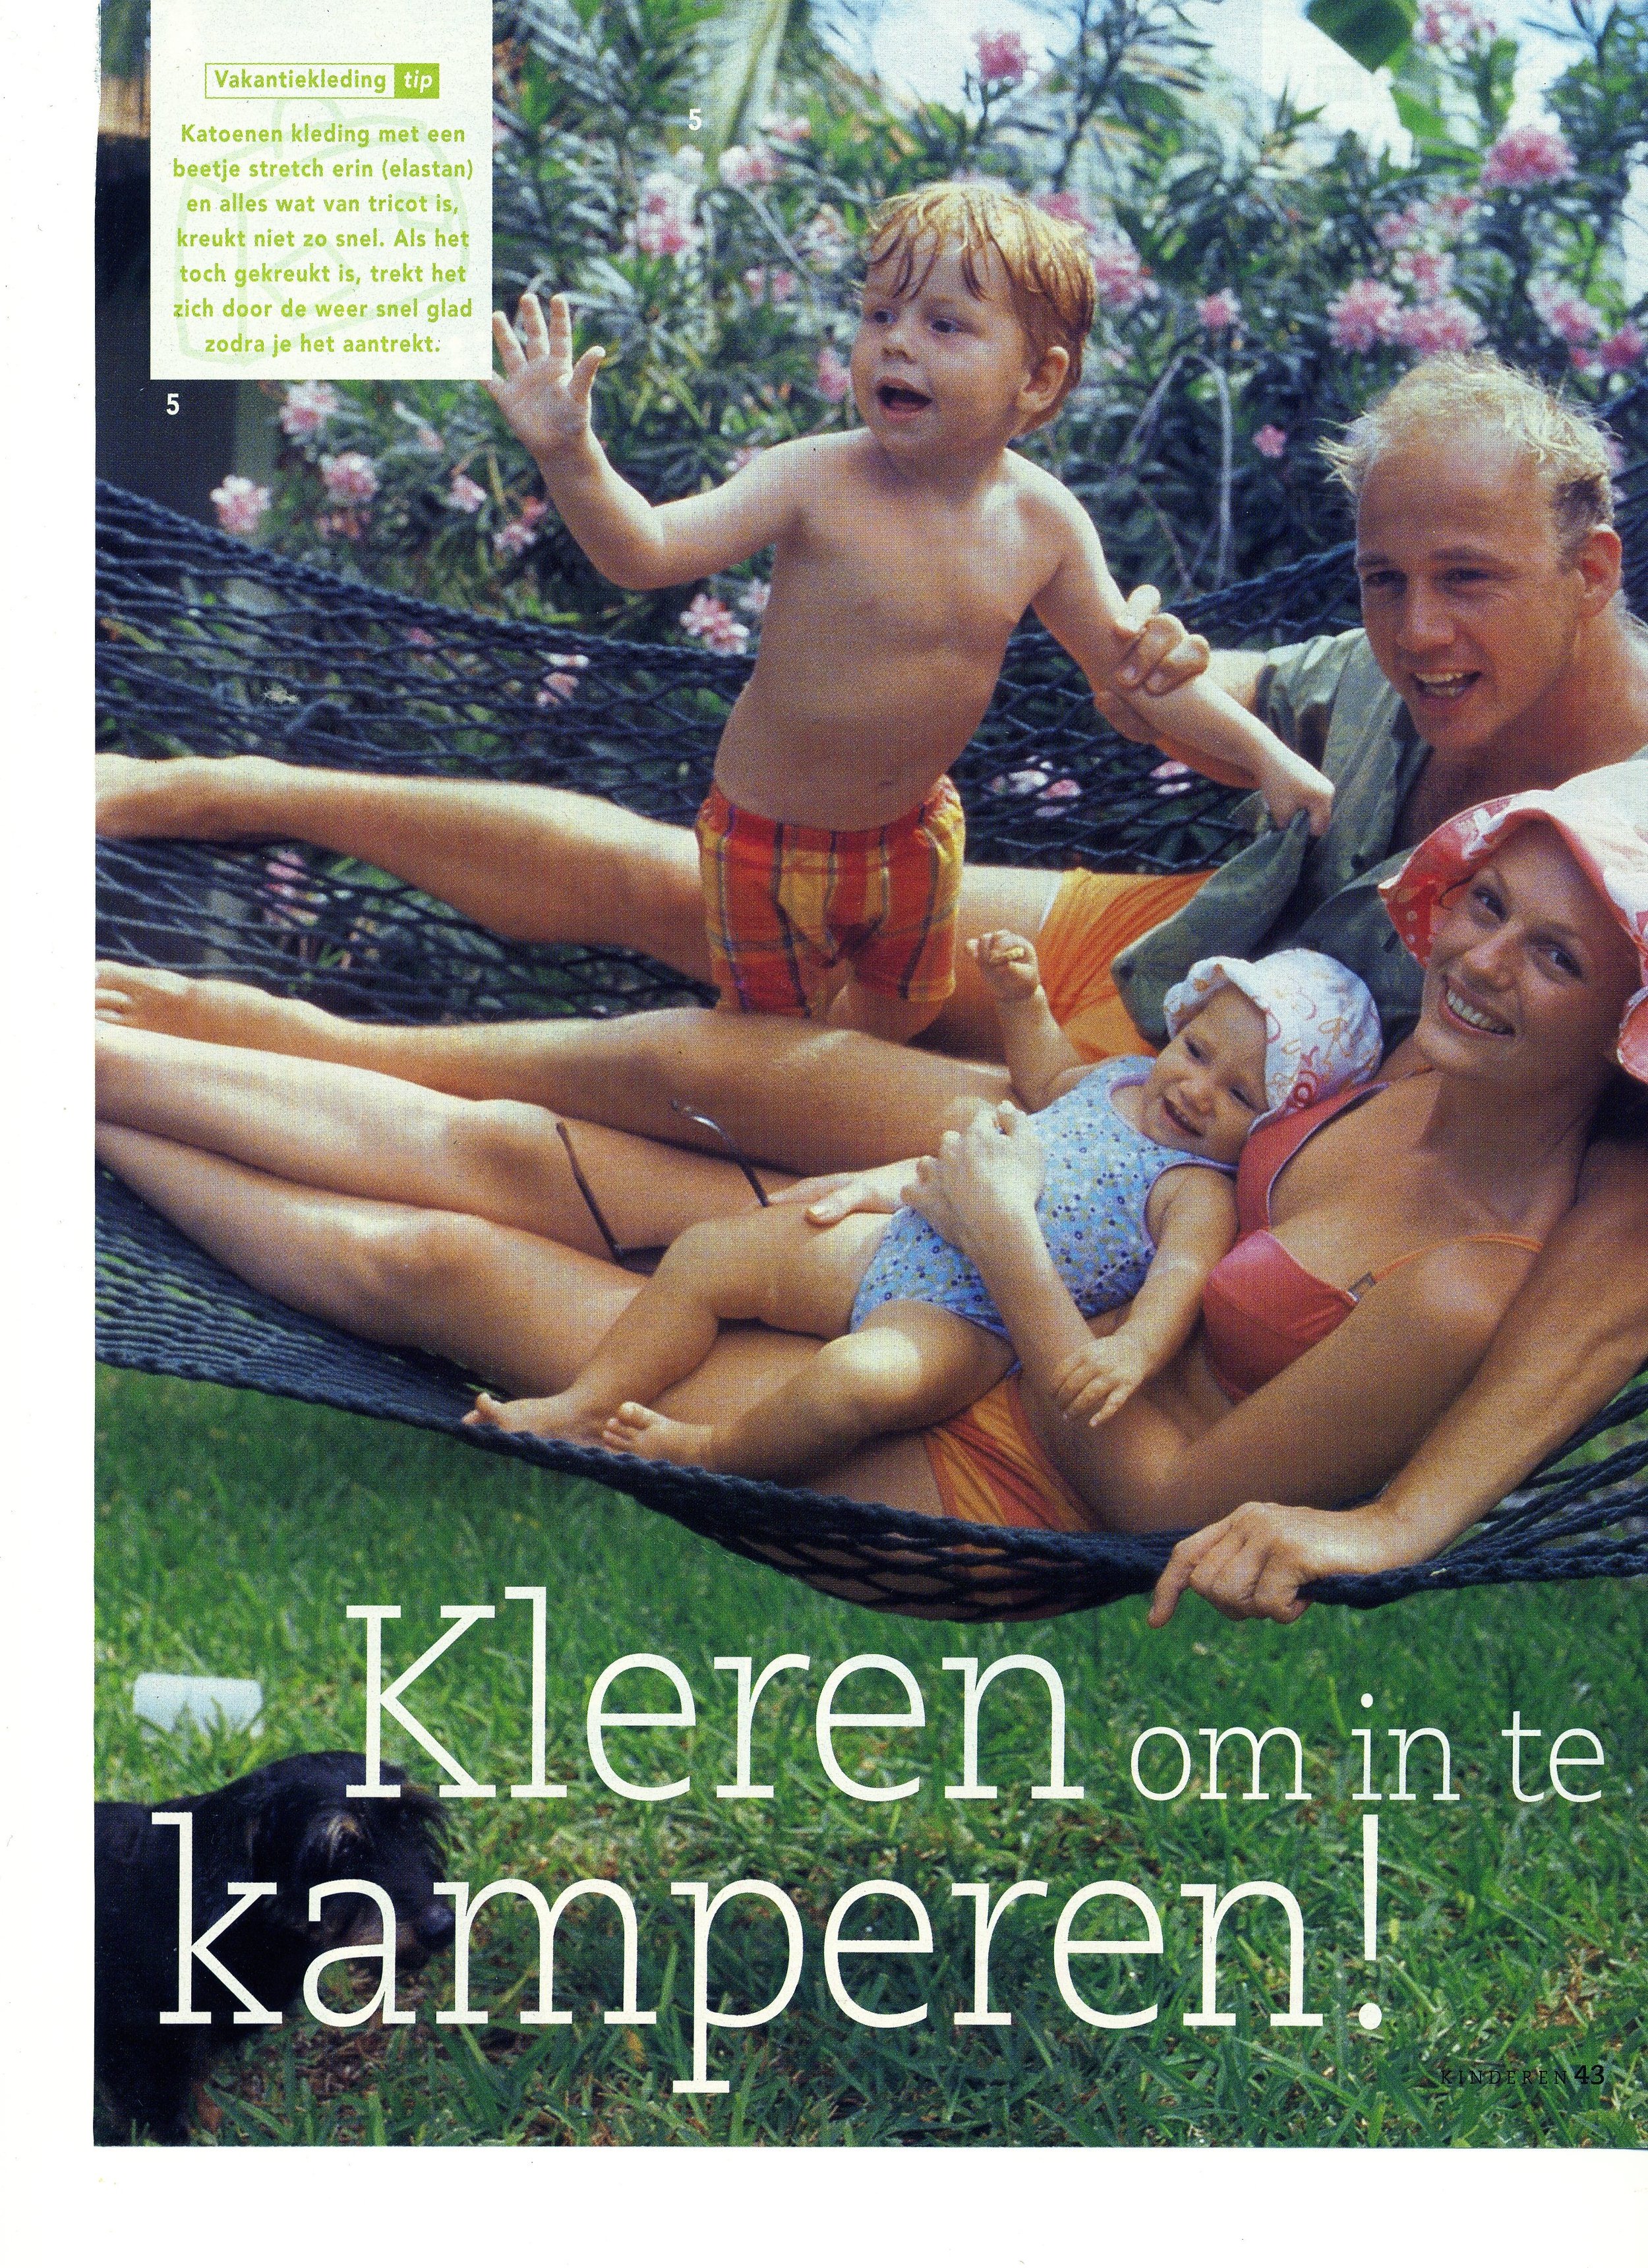 19-Netherlands-margreit magazine 2.jpeg